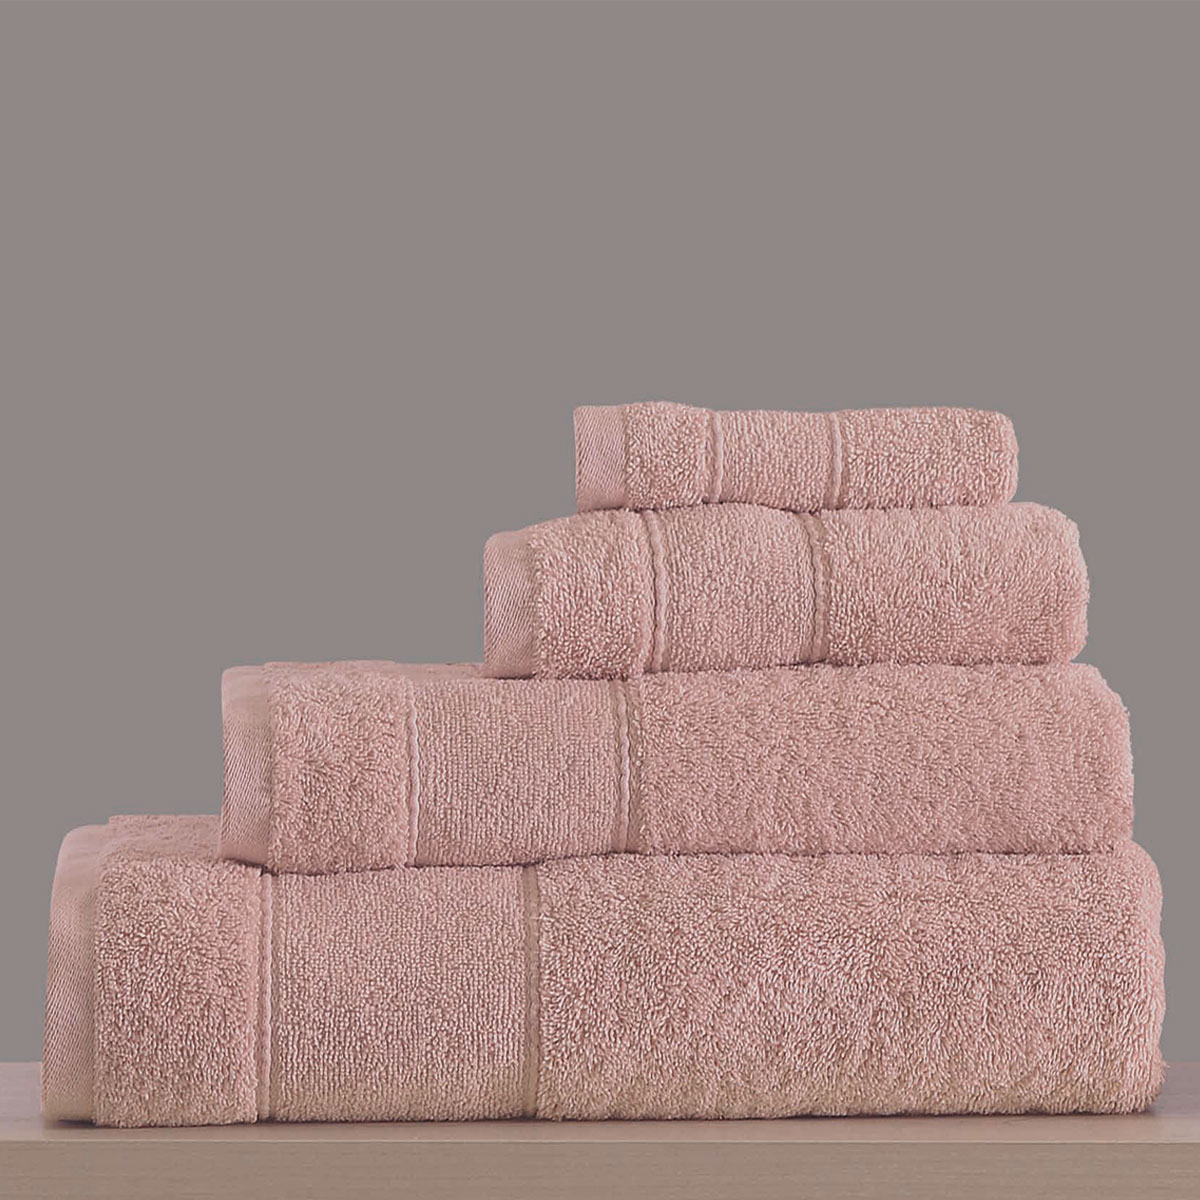 Πετσέτες Μπάνιου (Σετ 4τμχ) Makis Tselios Lillie Pink 500gsm 282927